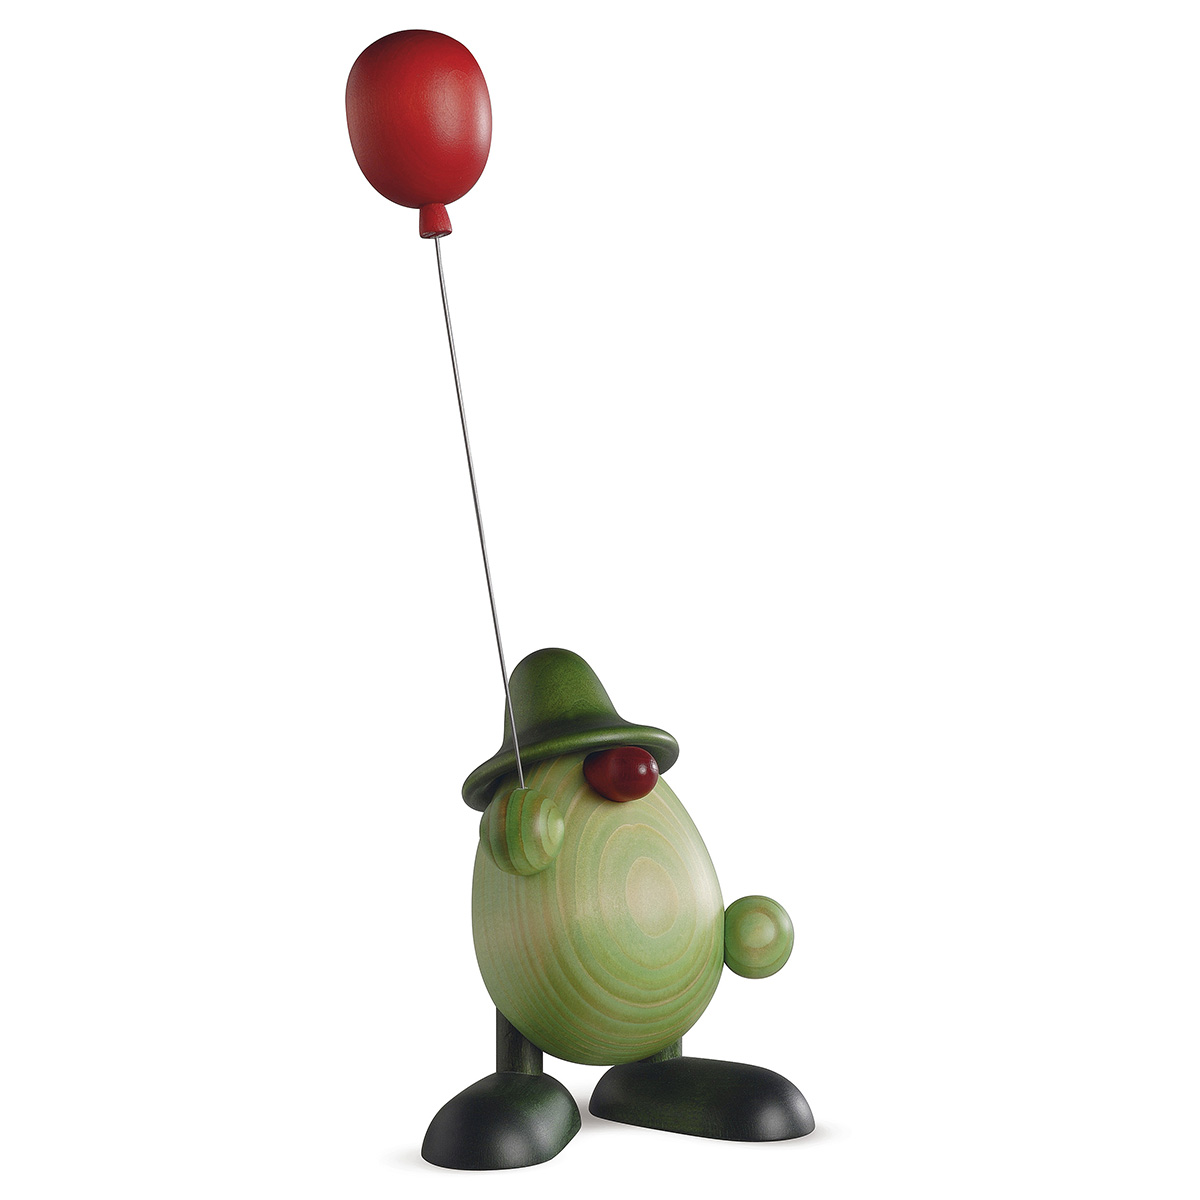 Little Green Man holding a balloon